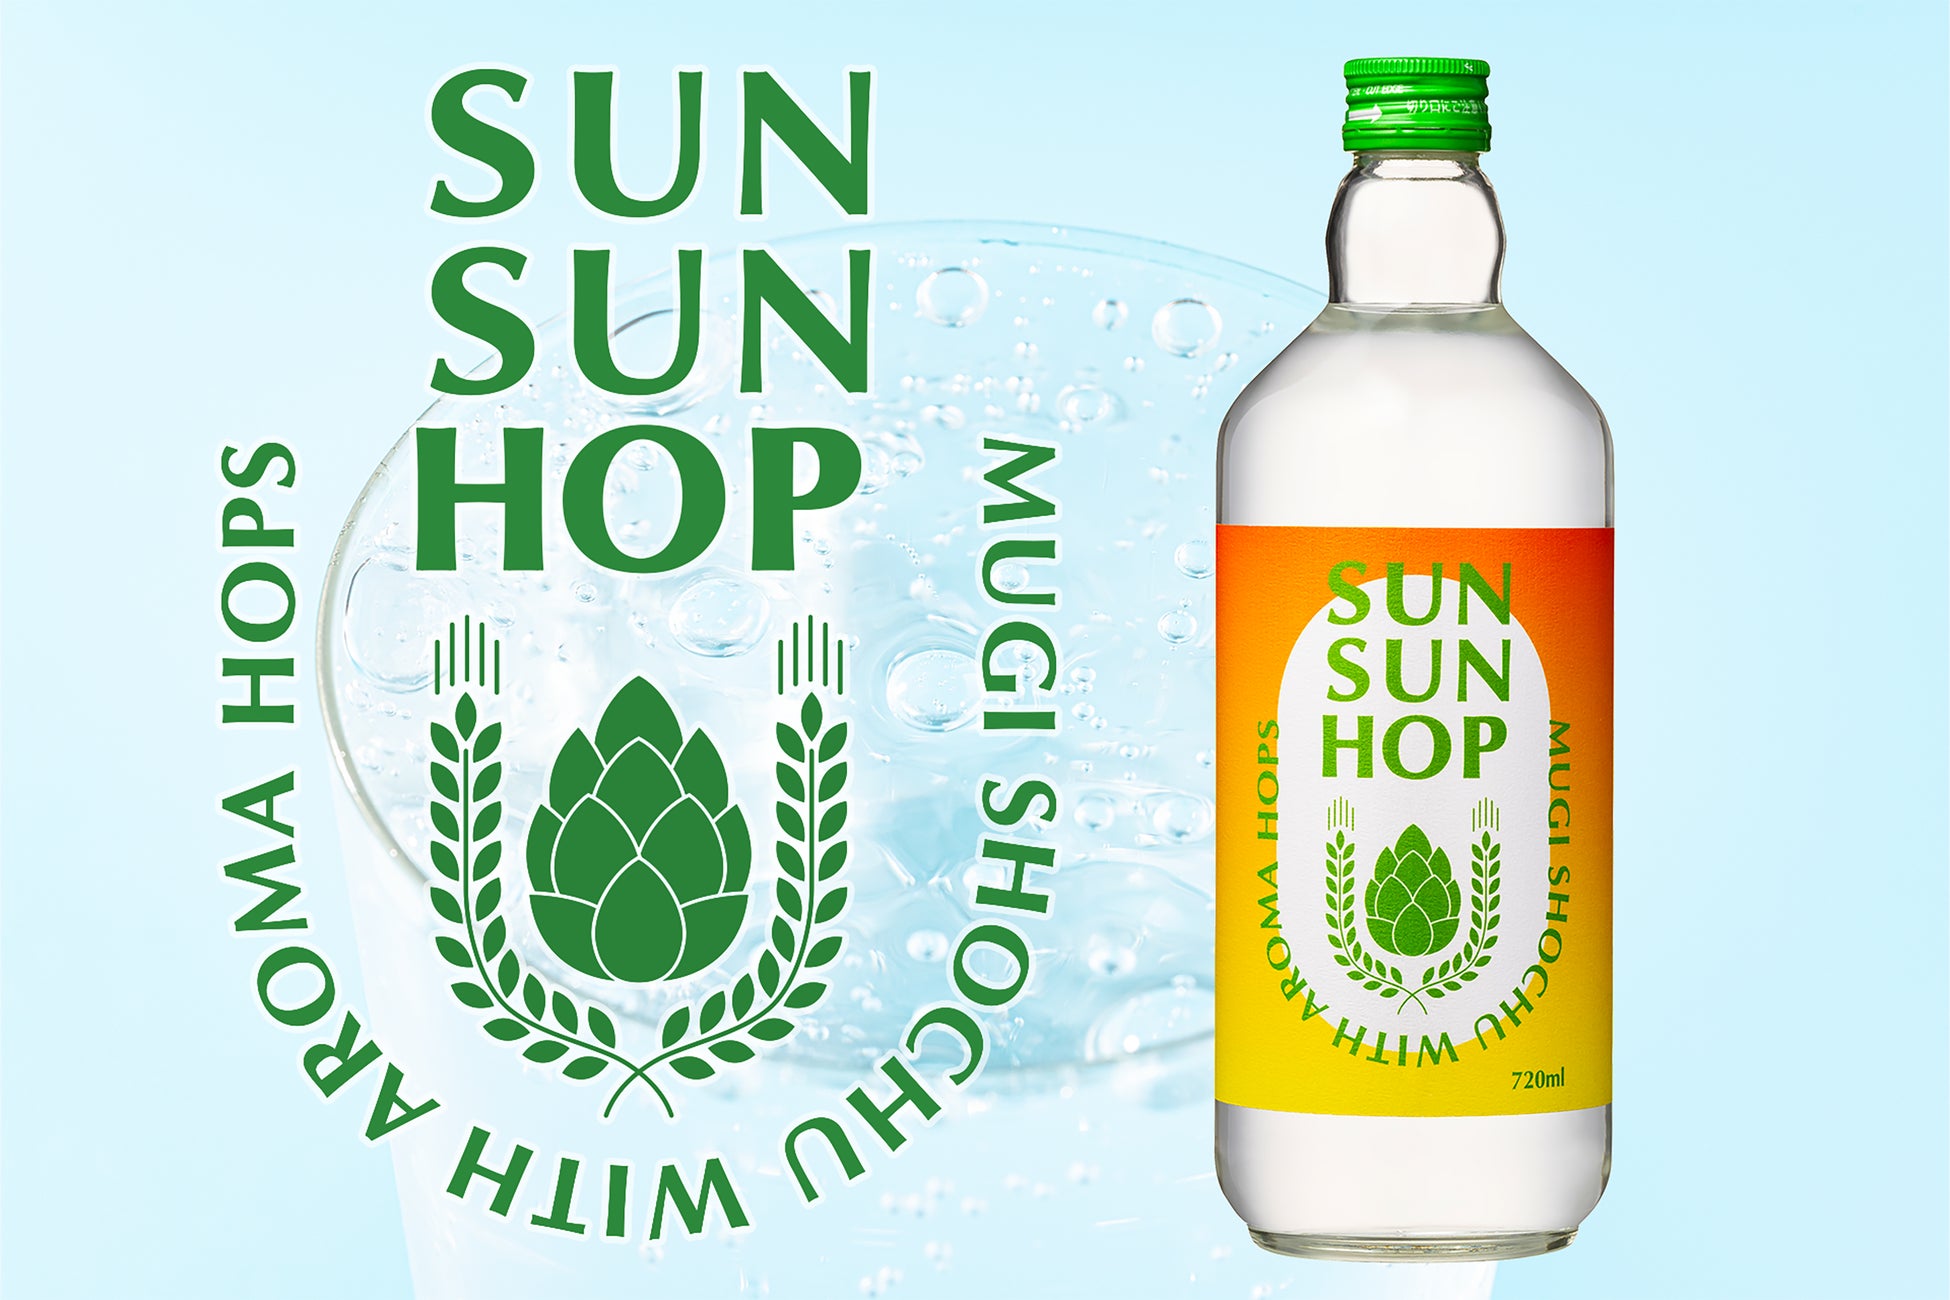 ホップで爽快な新感覚のお酒『SUN SUN HOP』を新発売。創業134年の酒造が、初心者でも美味しく飲める焼酎作りに挑戦。